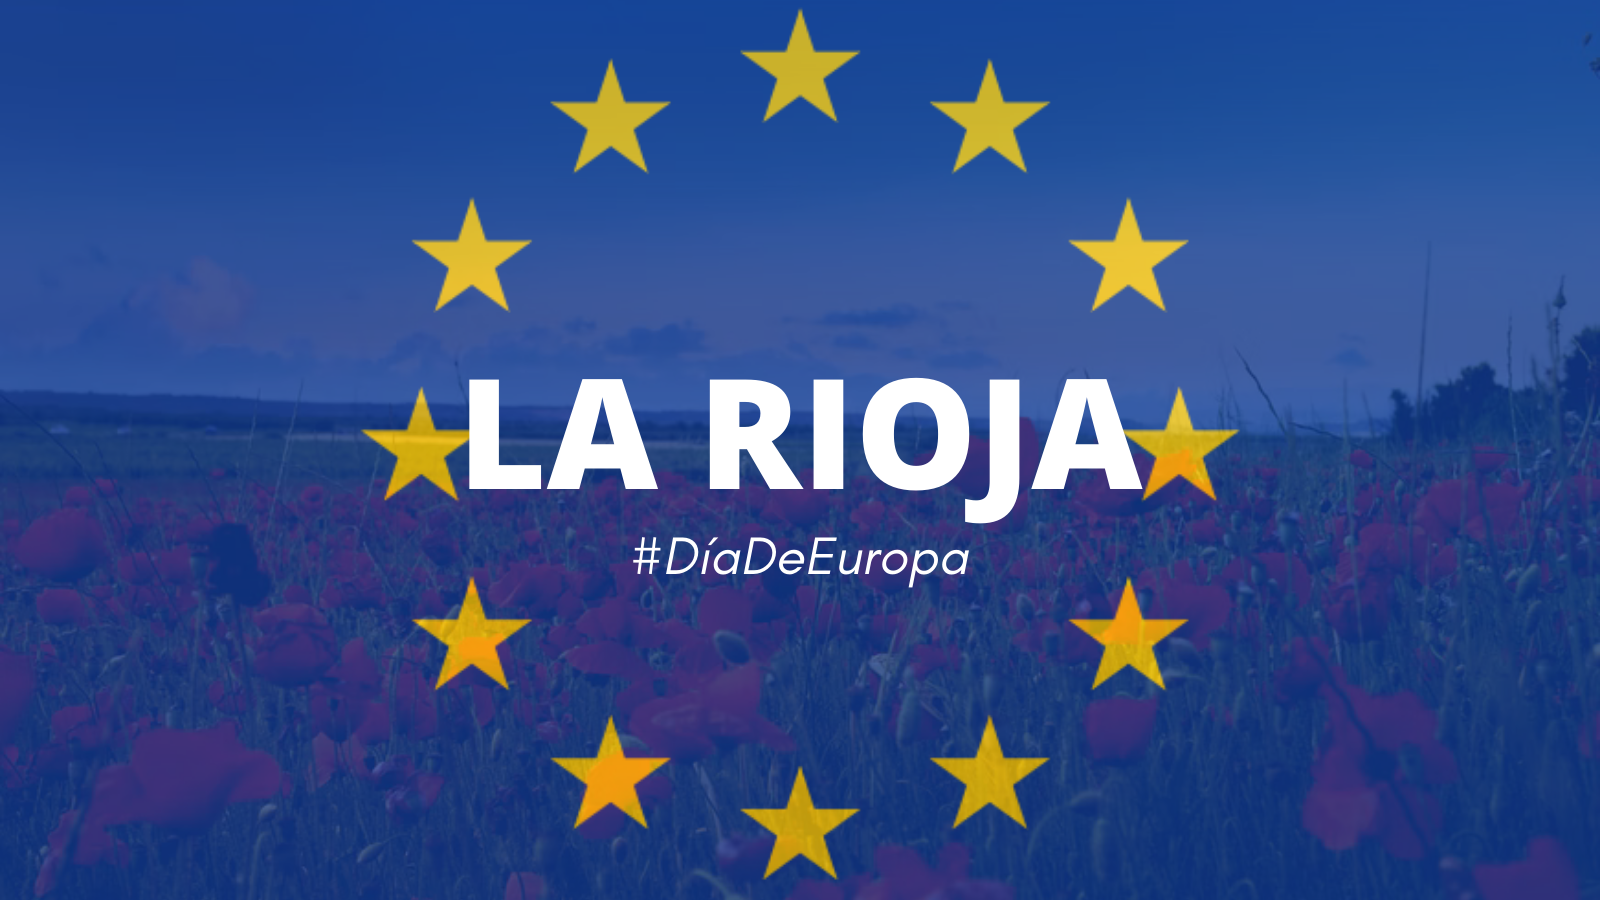 Día de Europa (9 de mayo) de 2022 en La Rioja